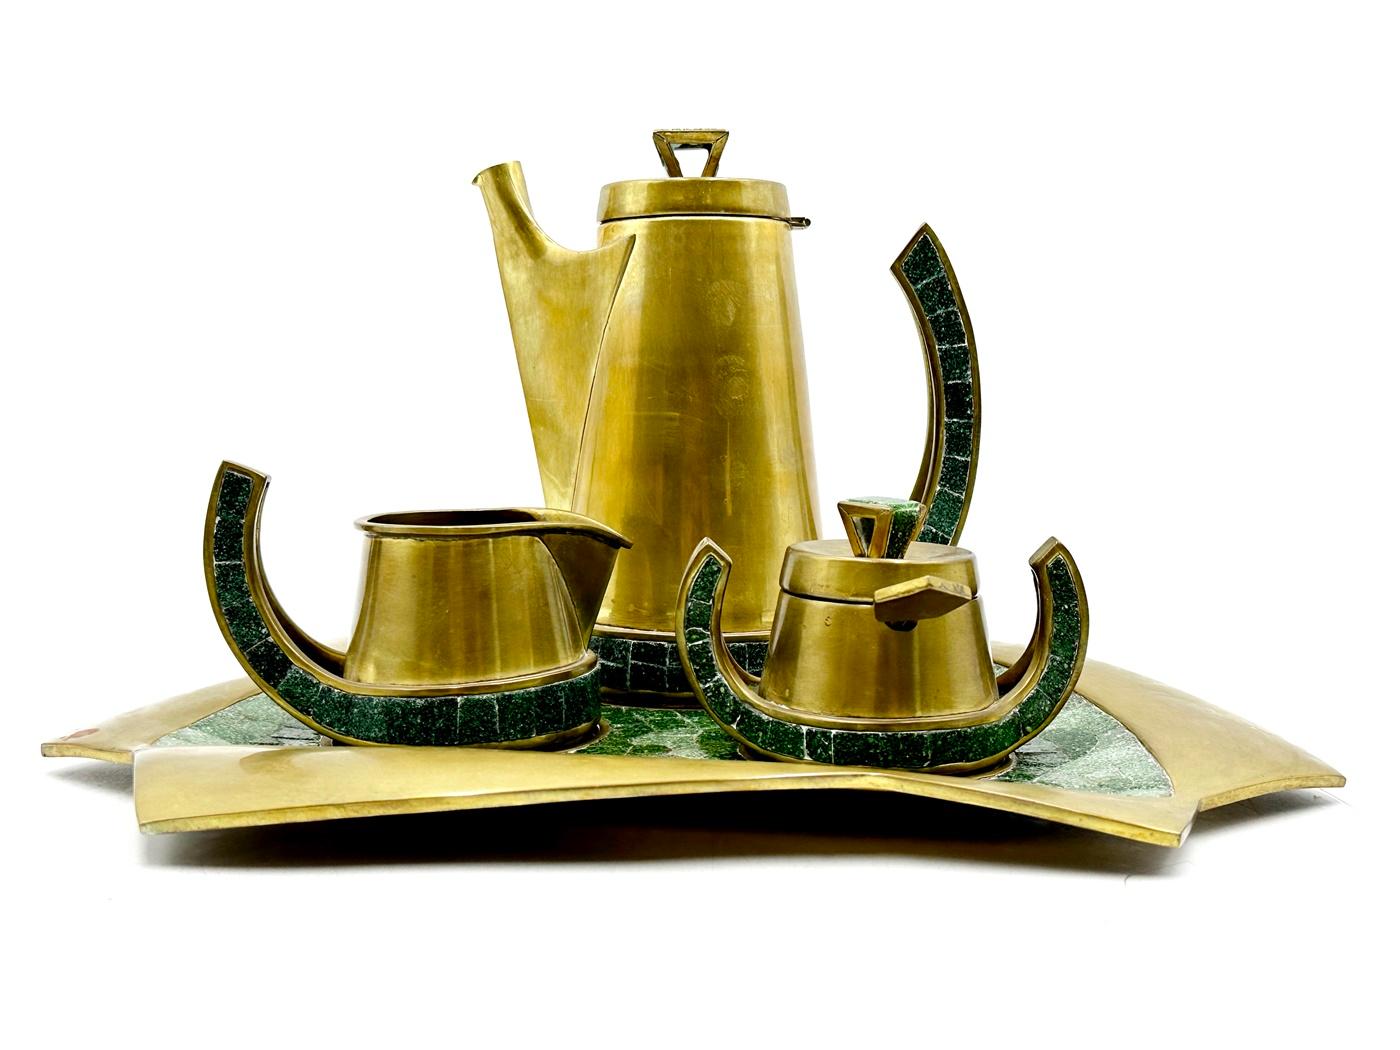 Das Tee-/Kaffeeservice aus Messing und Glasmosaik von Salvador Teran, Mexiko, 1960er Jahre, ist ein Vintage-Schatz, der Eleganz und Raffinesse ausstrahlt. 

Dieses exquisite, mit viel Liebe zum Detail gefertigte Set ist ein Beweis für die